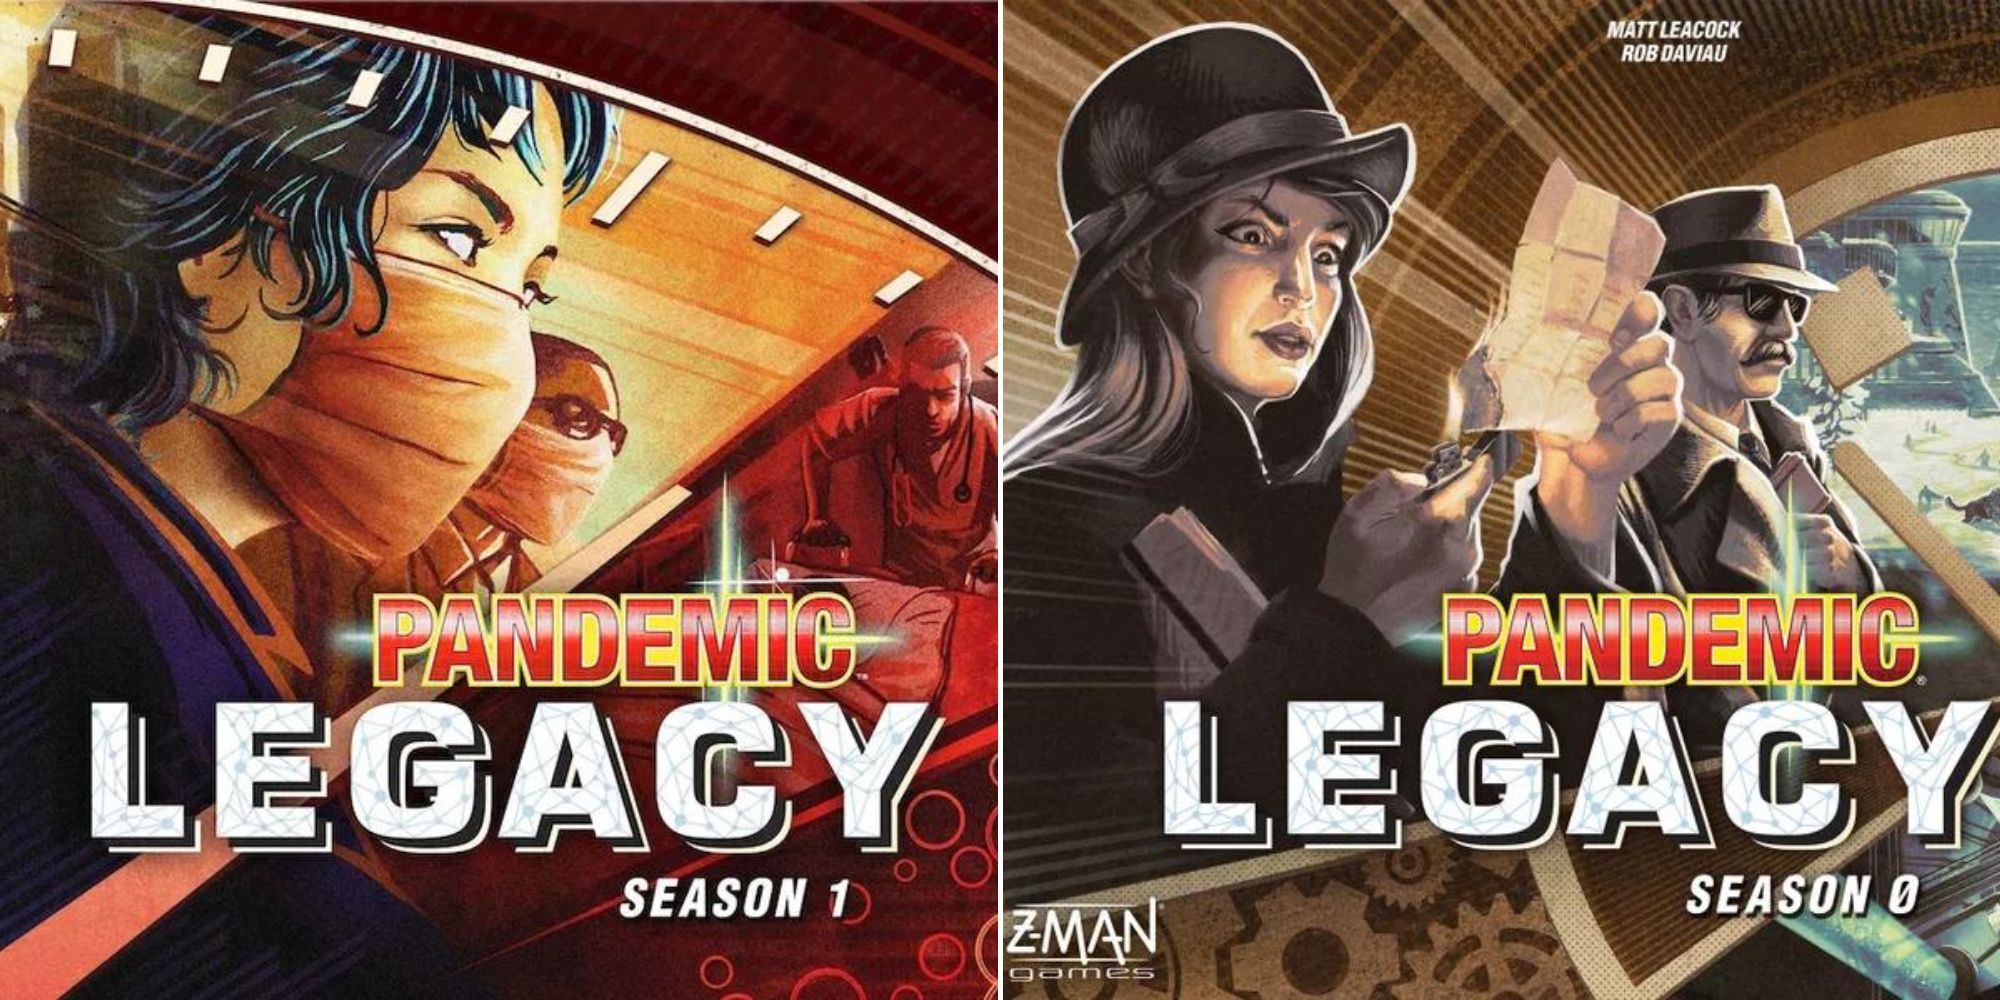 Pandemic Legacy Season 1 Box Art - Pandemic Legacy Season 0 Box Art